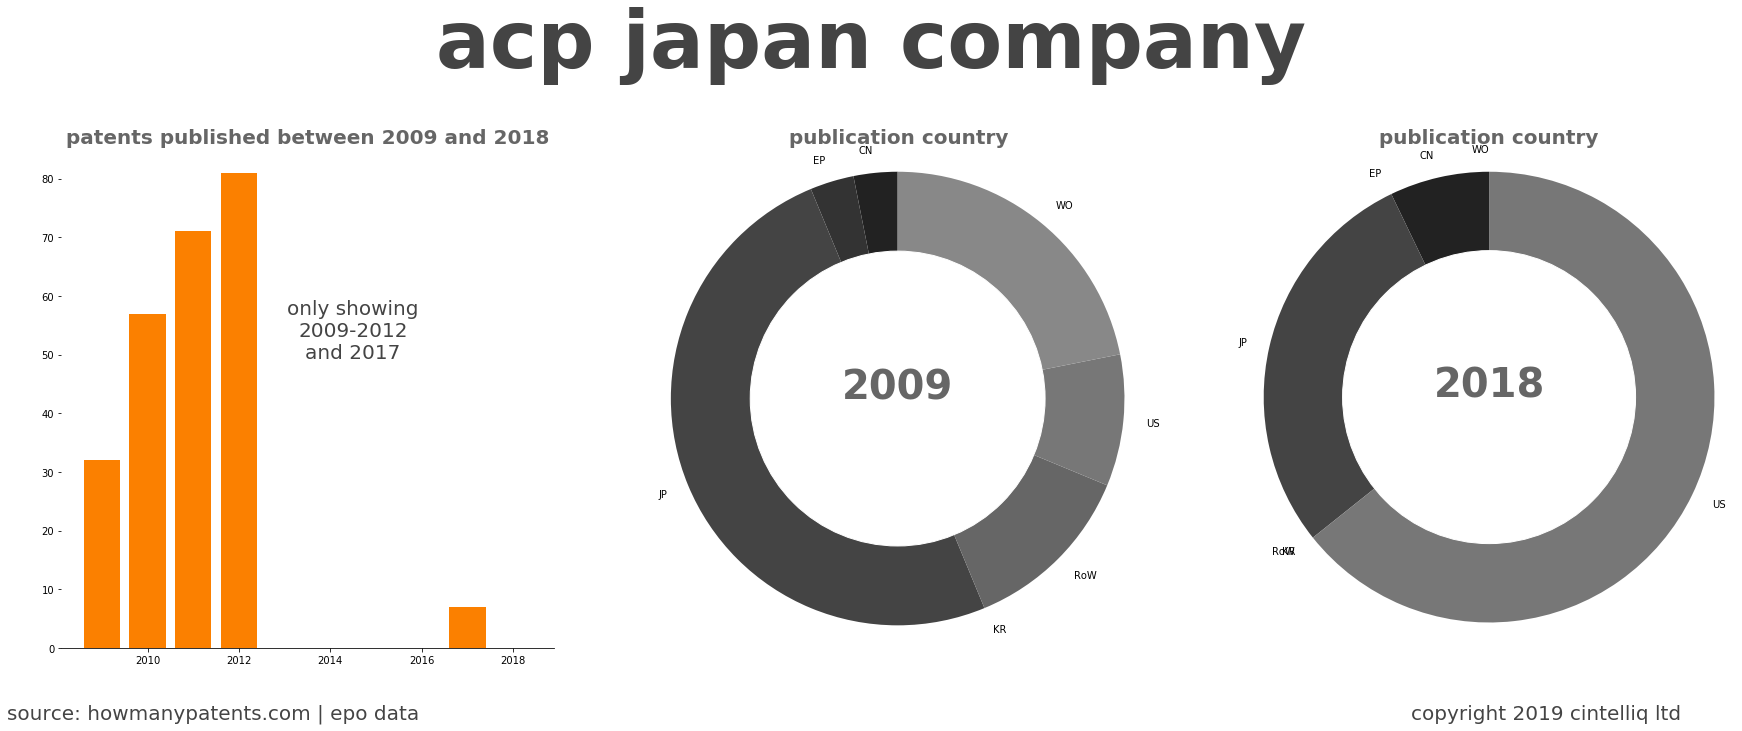 summary of patents for Acp Japan Company